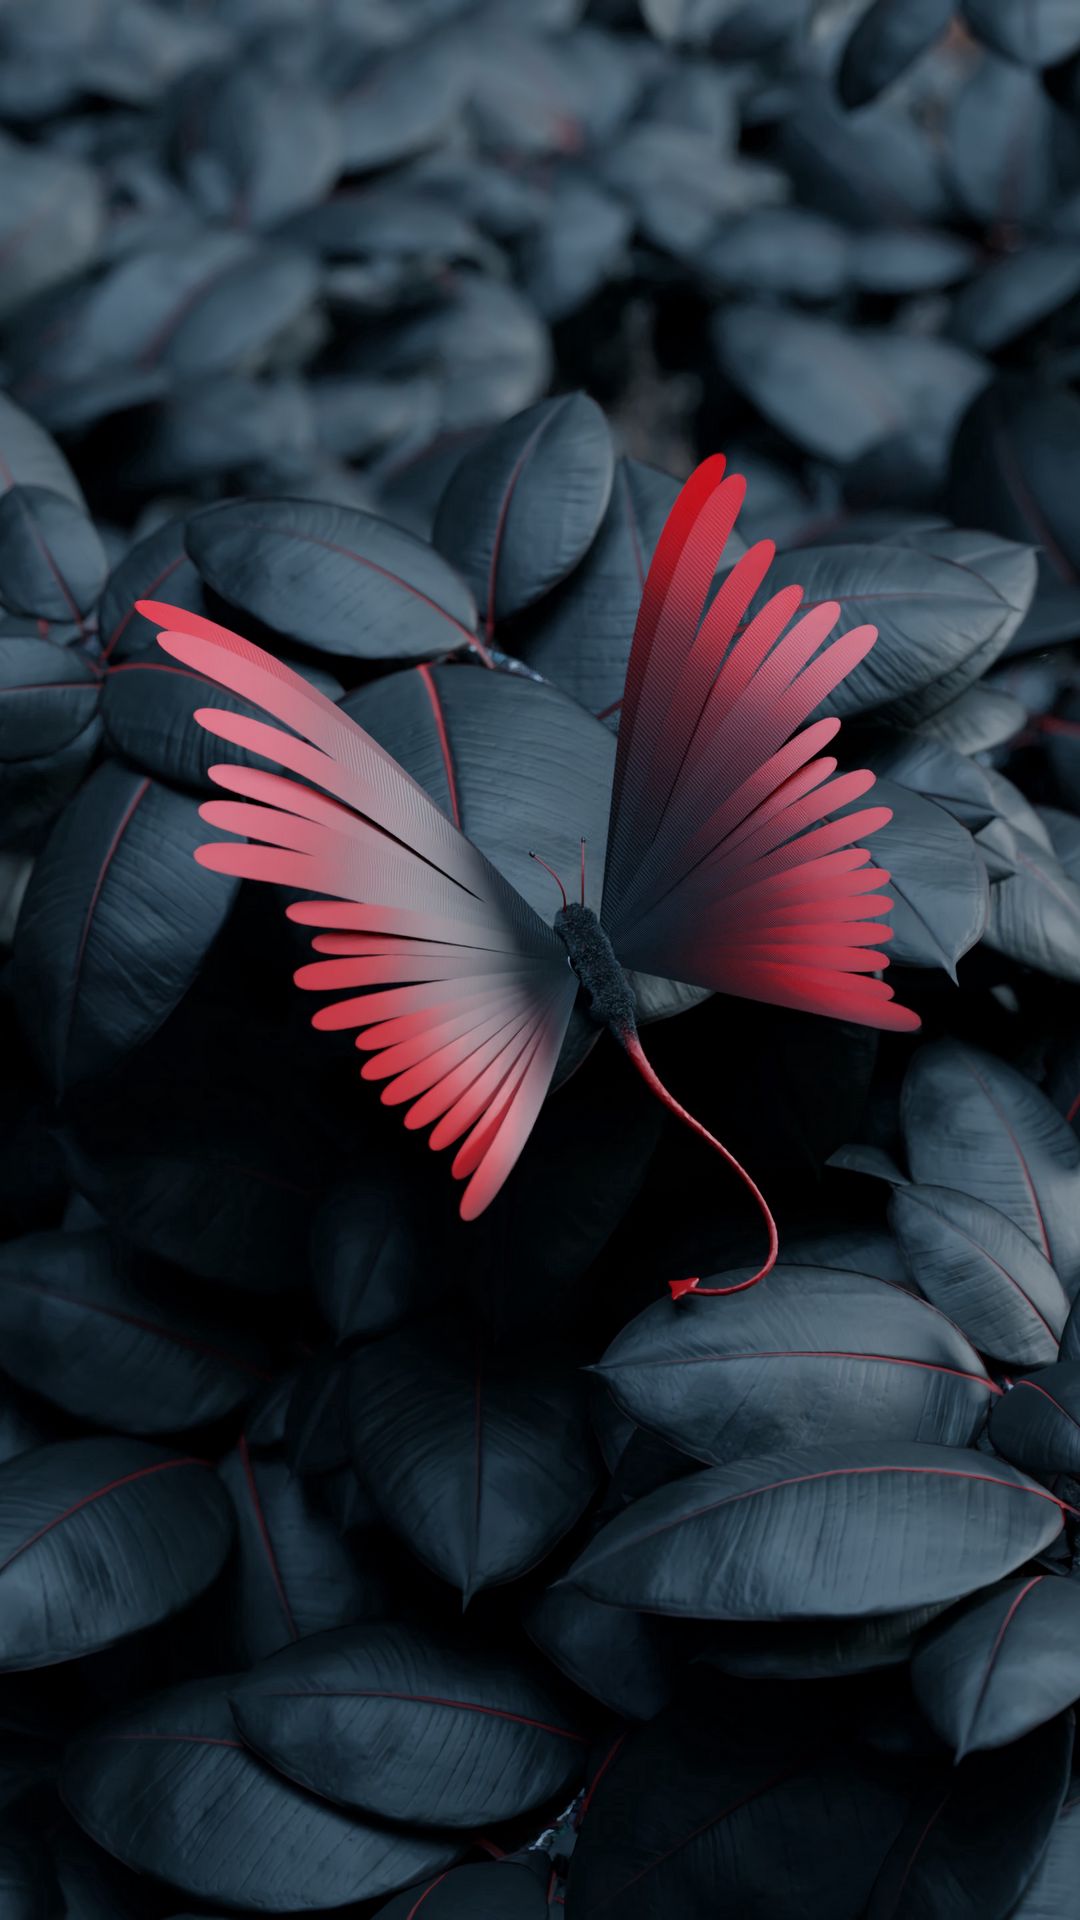 Với tấm hình nền sắc màu đầy hoa văn con bướm nhẹ nhàng, bạn sẽ được nhìn thấy những điều cực kỳ đẹp đẽ, tuyệt vời và đầy màu sắc mà không ai có thể phủ nhận được!